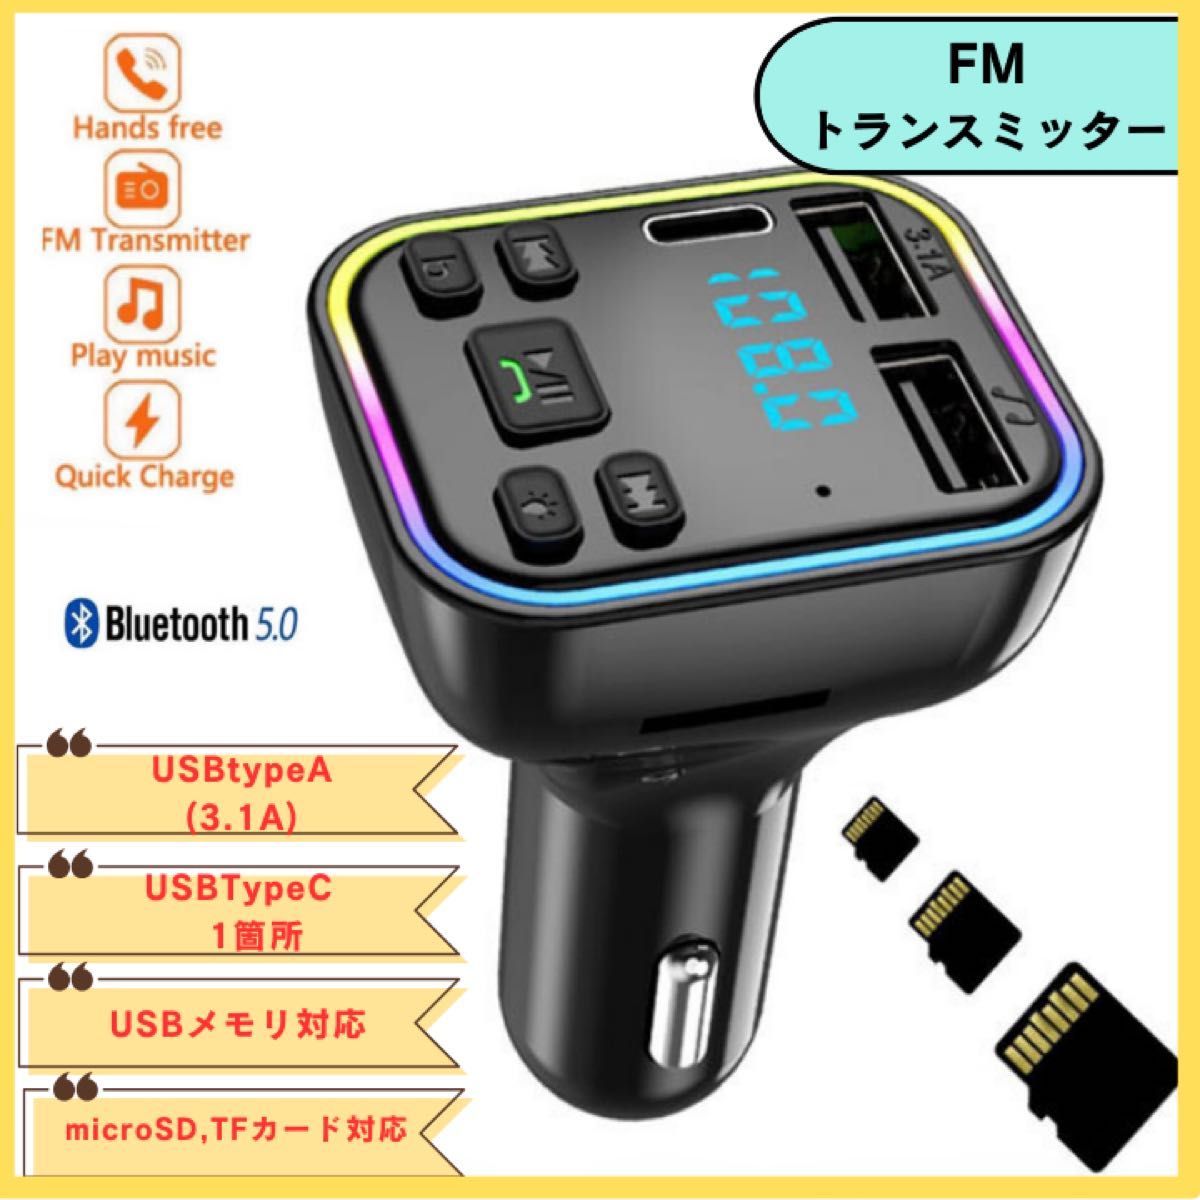 FMトランスミッター ハンズフリー通話 USB2ポート Type-C1ポート シガーソケット USB 自動車用 